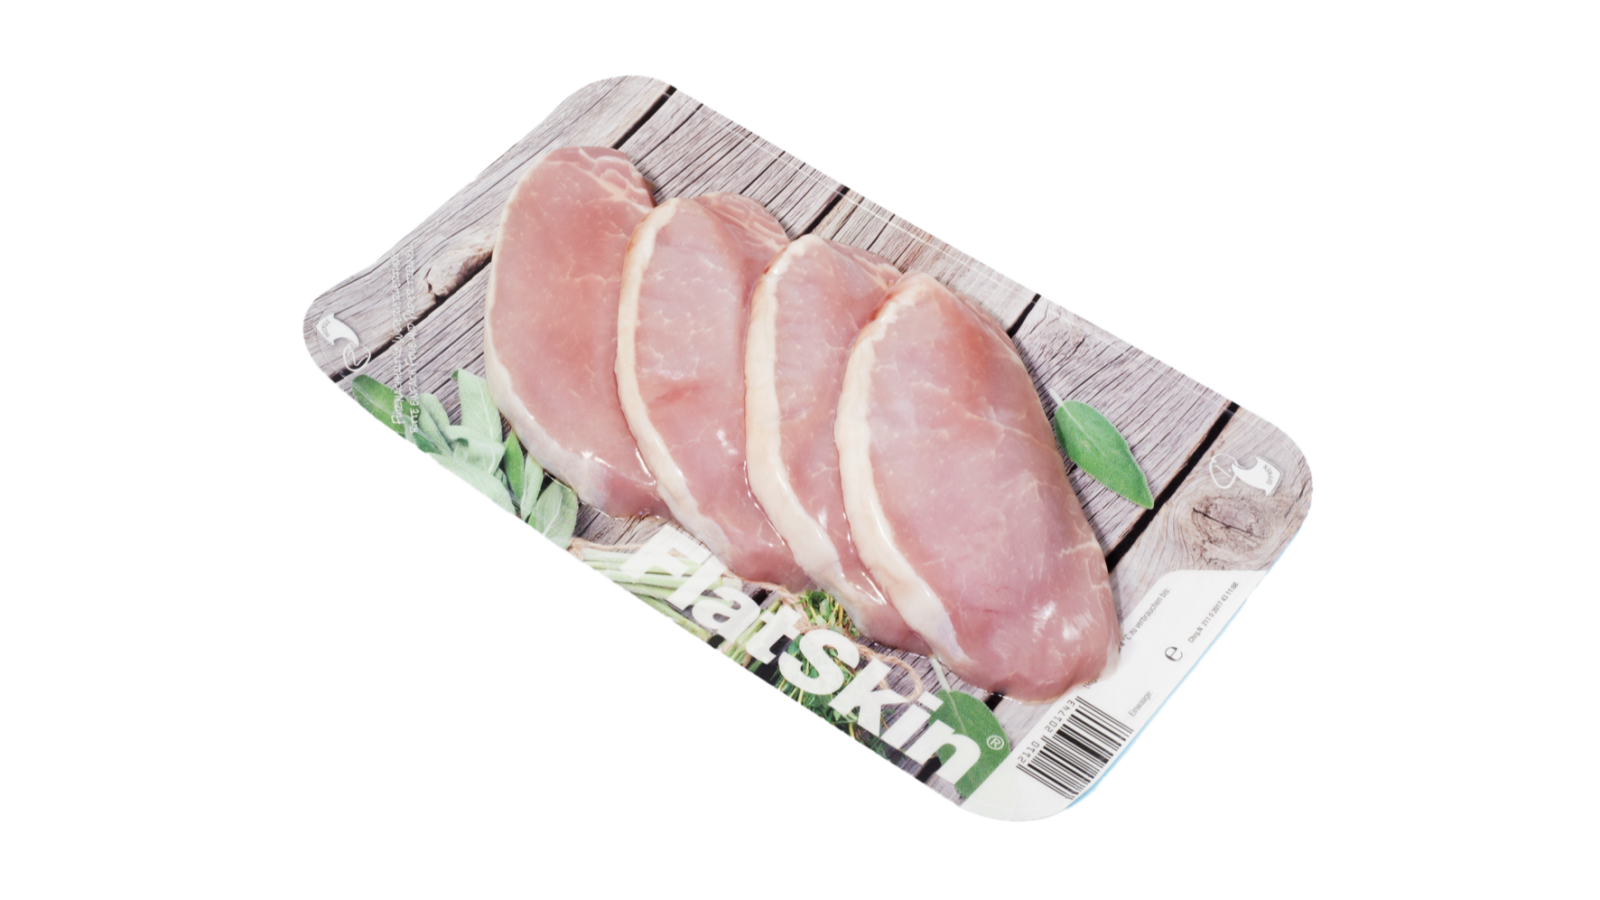 Skinpack fra Nemco er den perfekte løsning til at fremhæve produktet i køledisken. Vi har et bredt udvalg af kød emballage til f.eks. kød, fisk, kylling, grøntsager og færdigretter, hvoraf flere af vores skin pack produkter er genanvendelige eller plastreduceret.